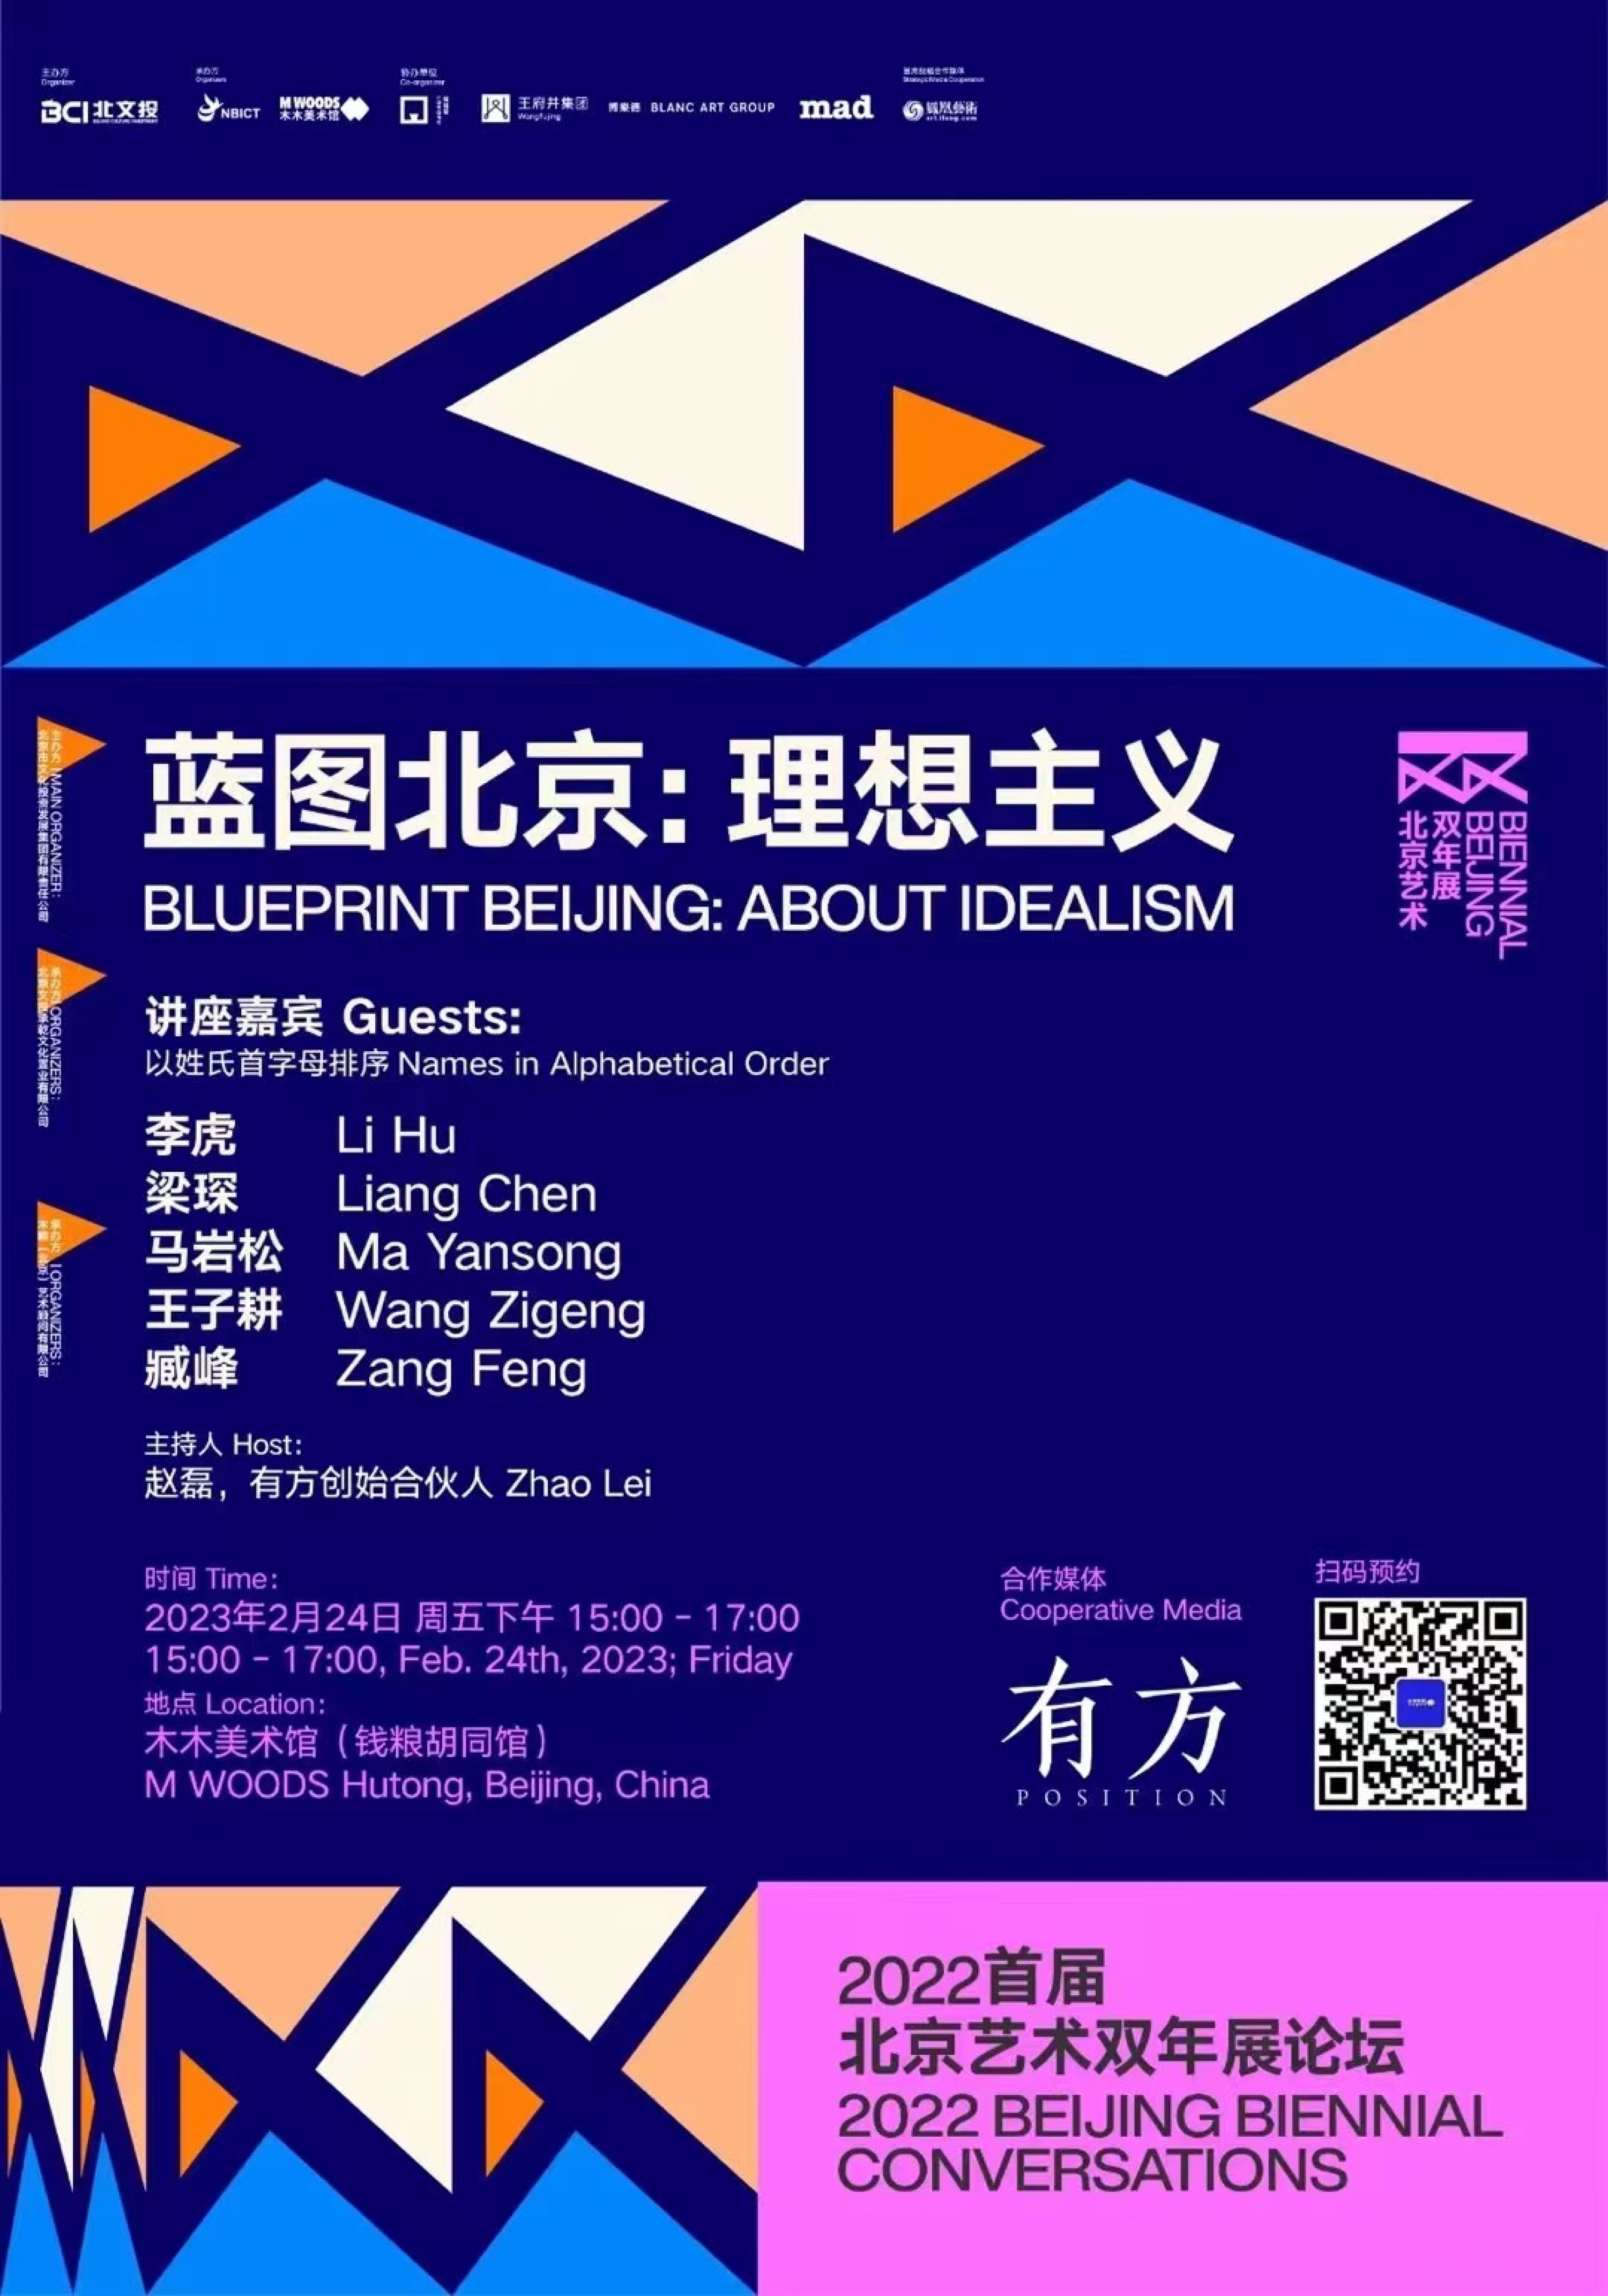 王子耕受邀出席北京艺术双年展论坛“蓝图北京——理想主义”